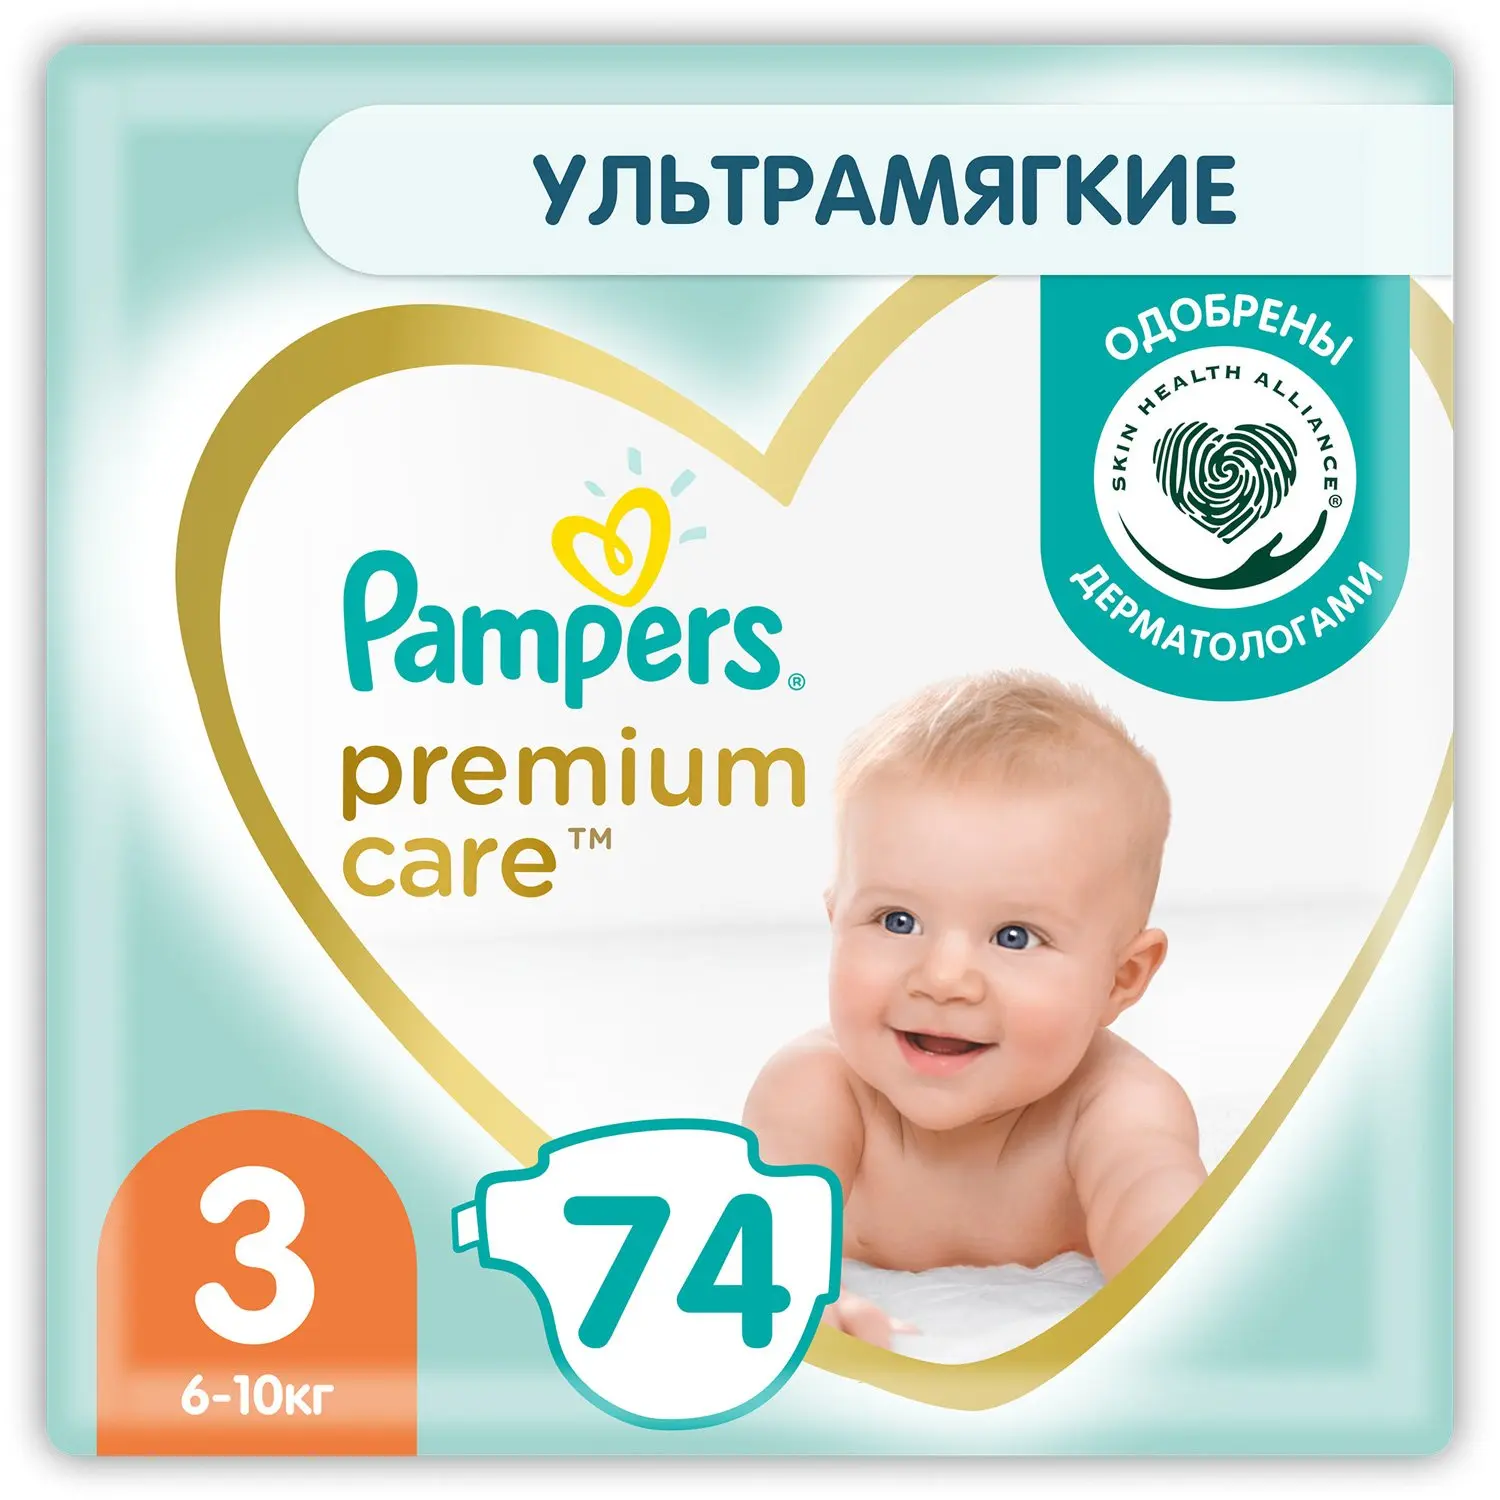 ПАМПЕРС подгузники детские Premium Care 6-10кг р.миди 3 N74 (ПРОКТЕР & ГЕМБЛ , РФ)